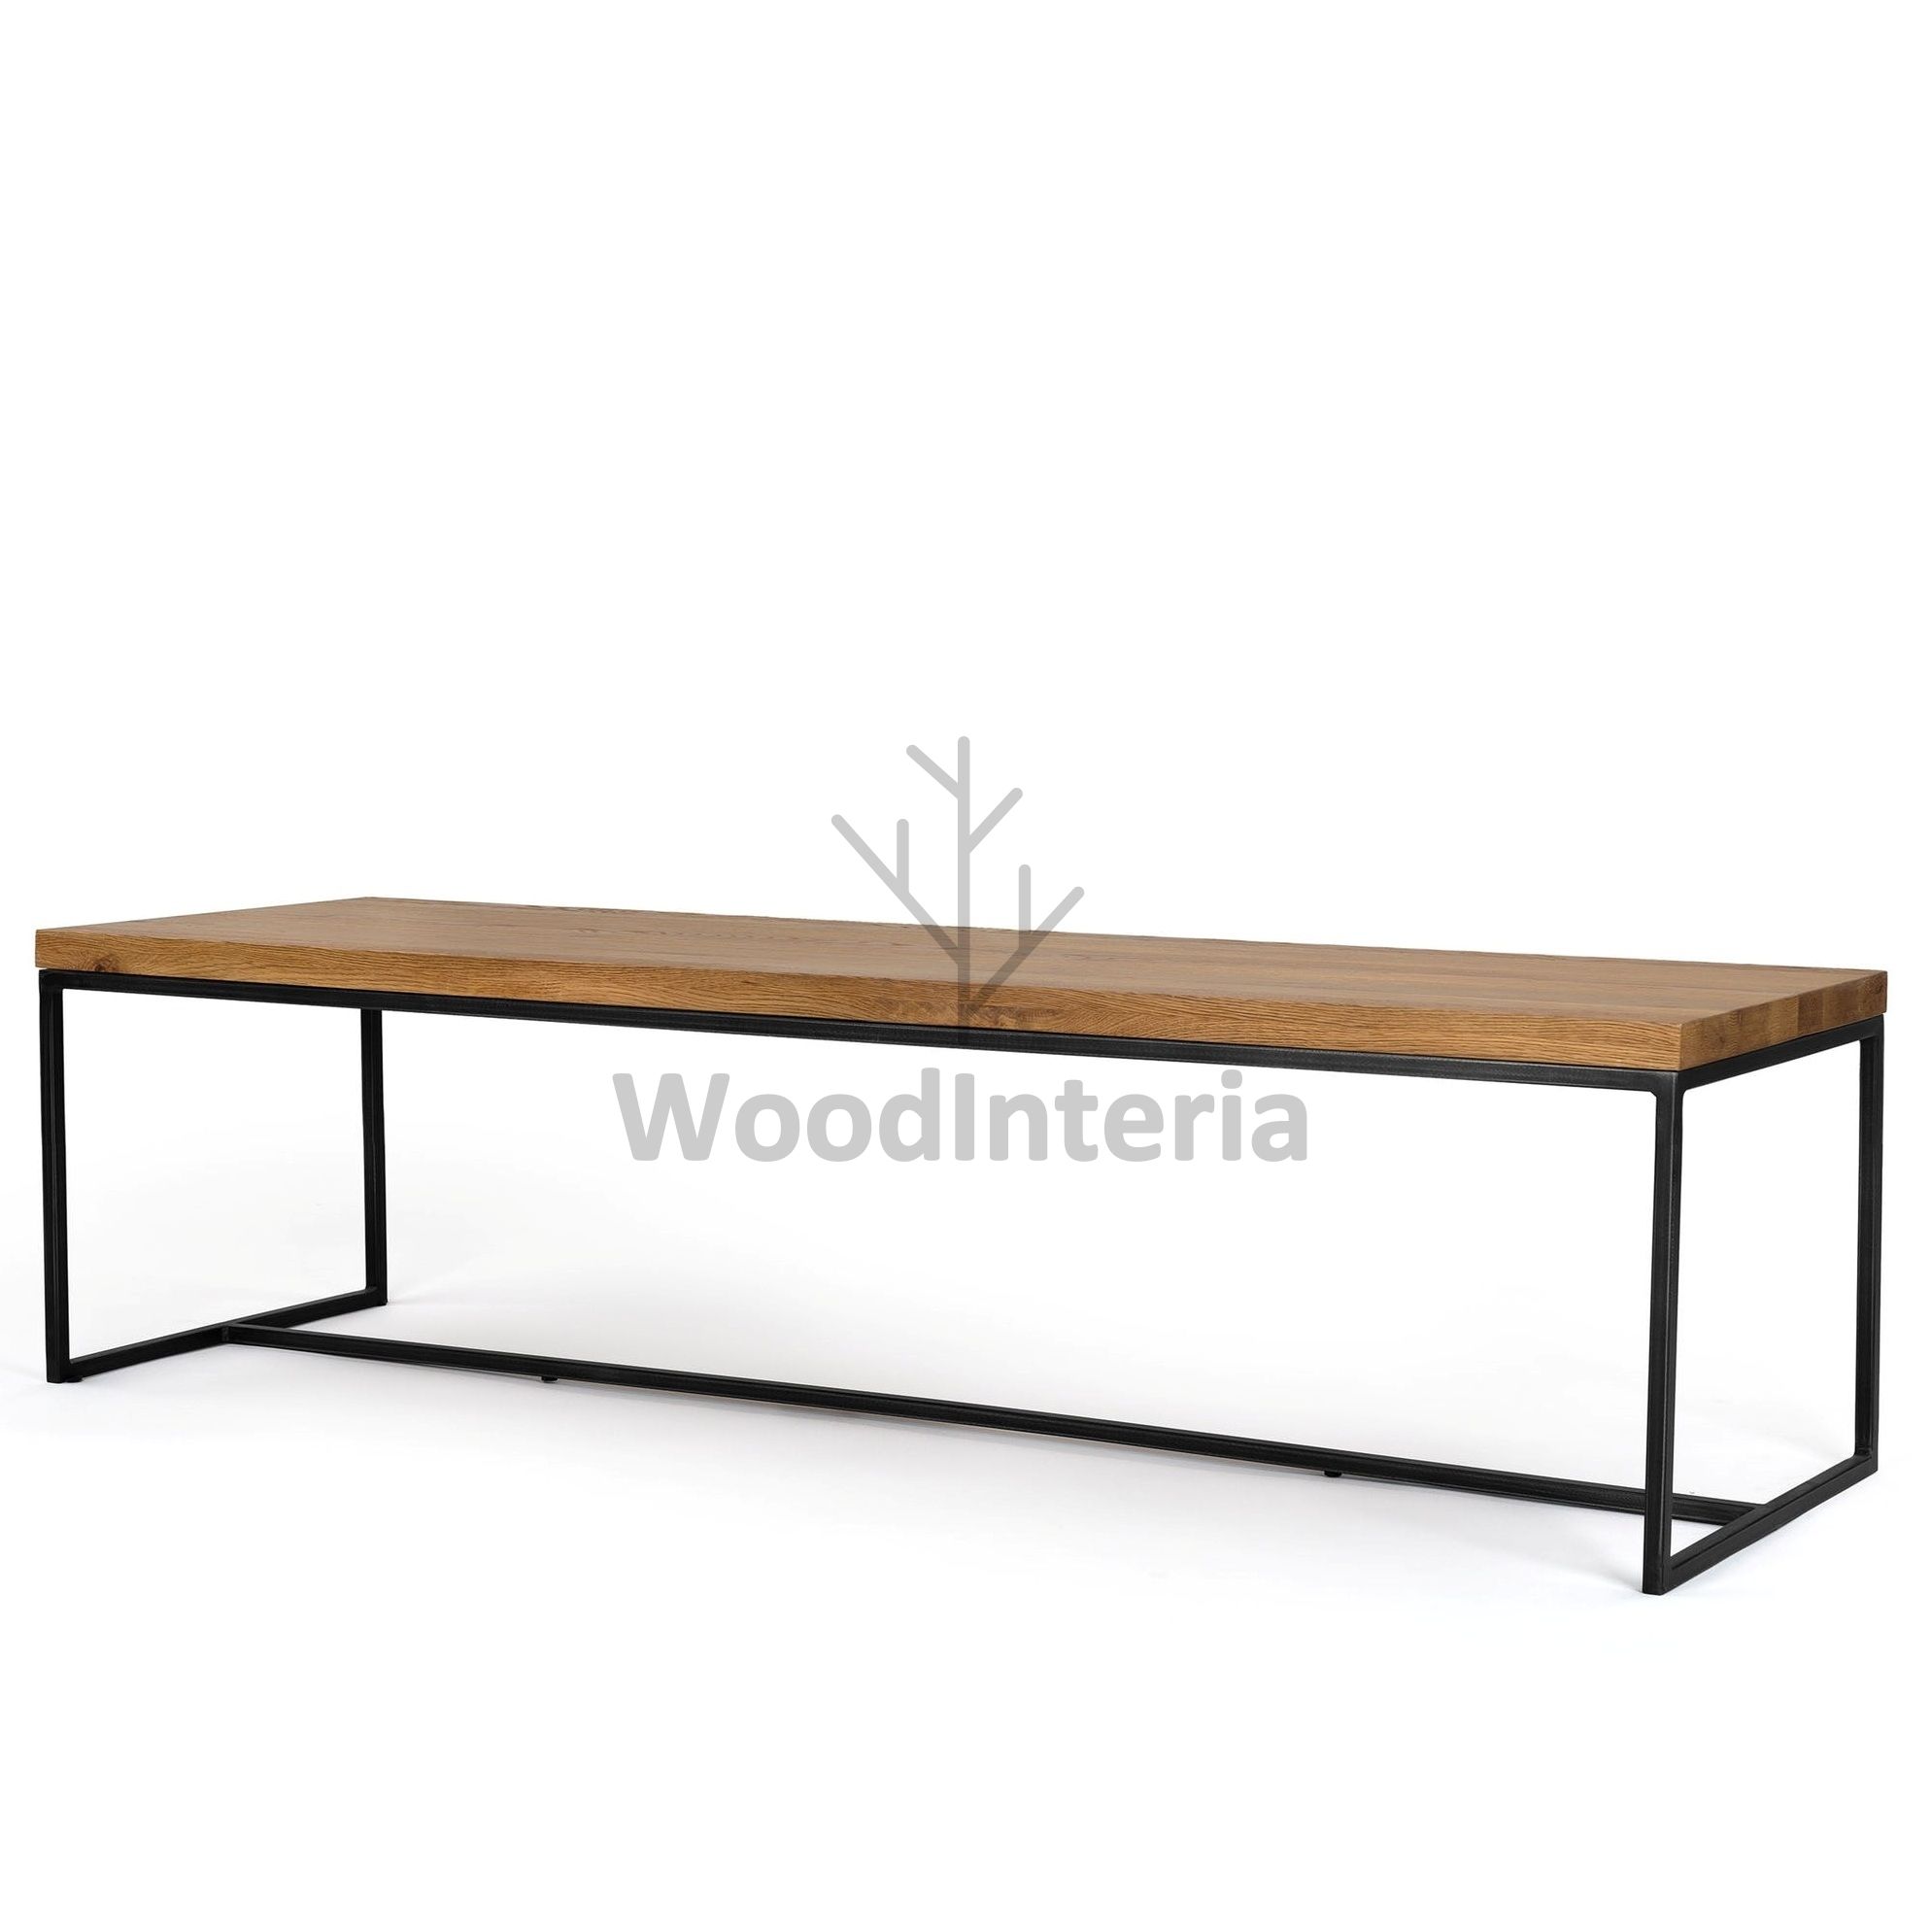 фото журнальный столик loft industrial oak qubris long в интерьере лофт эко | WoodInteria